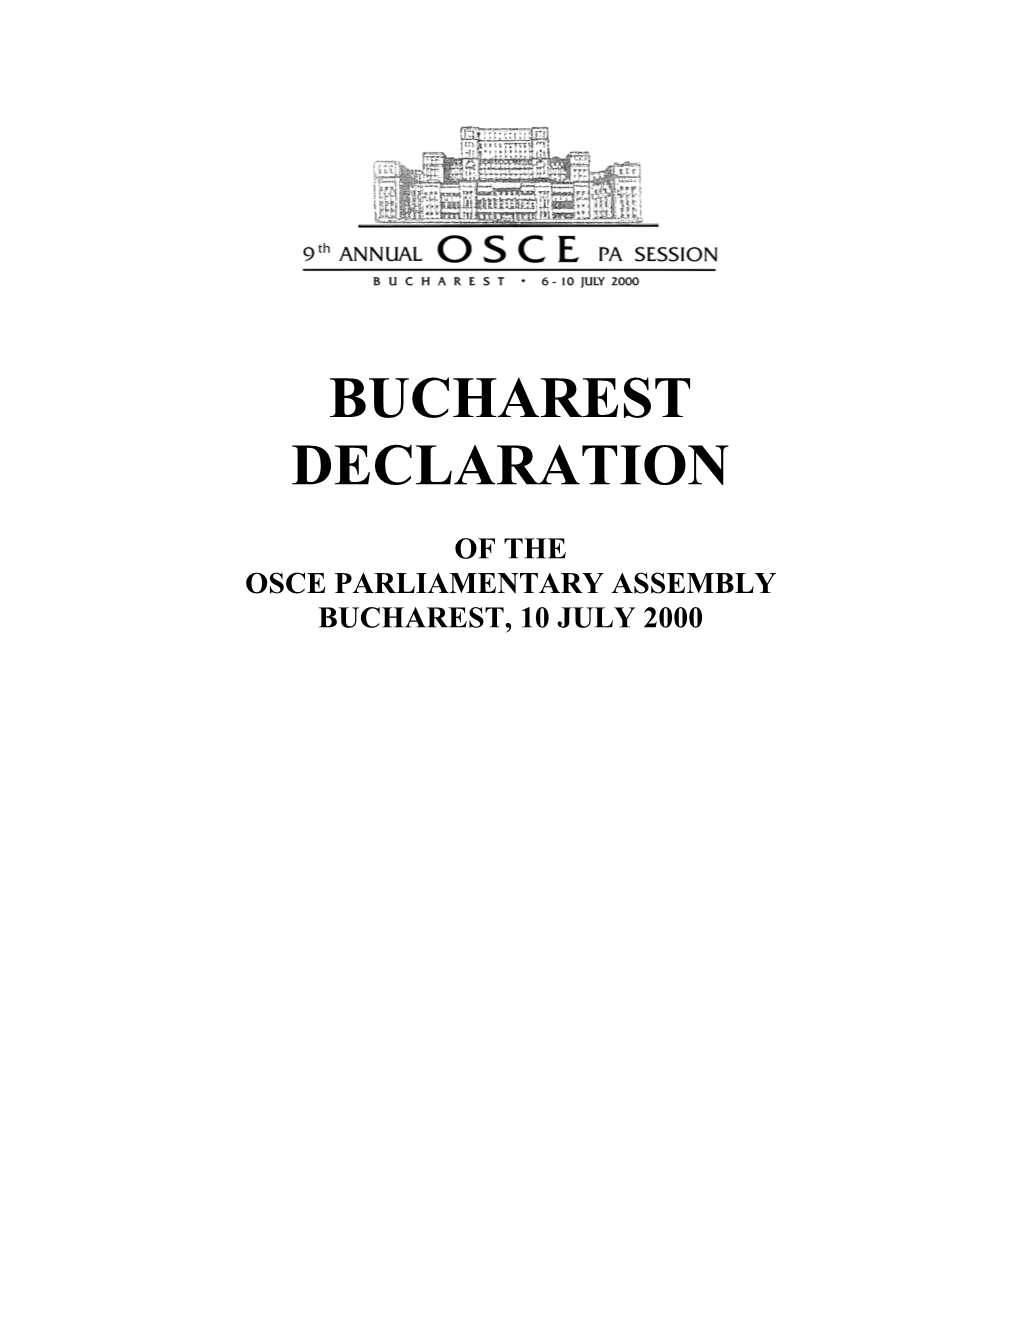 Bucharest Declaration